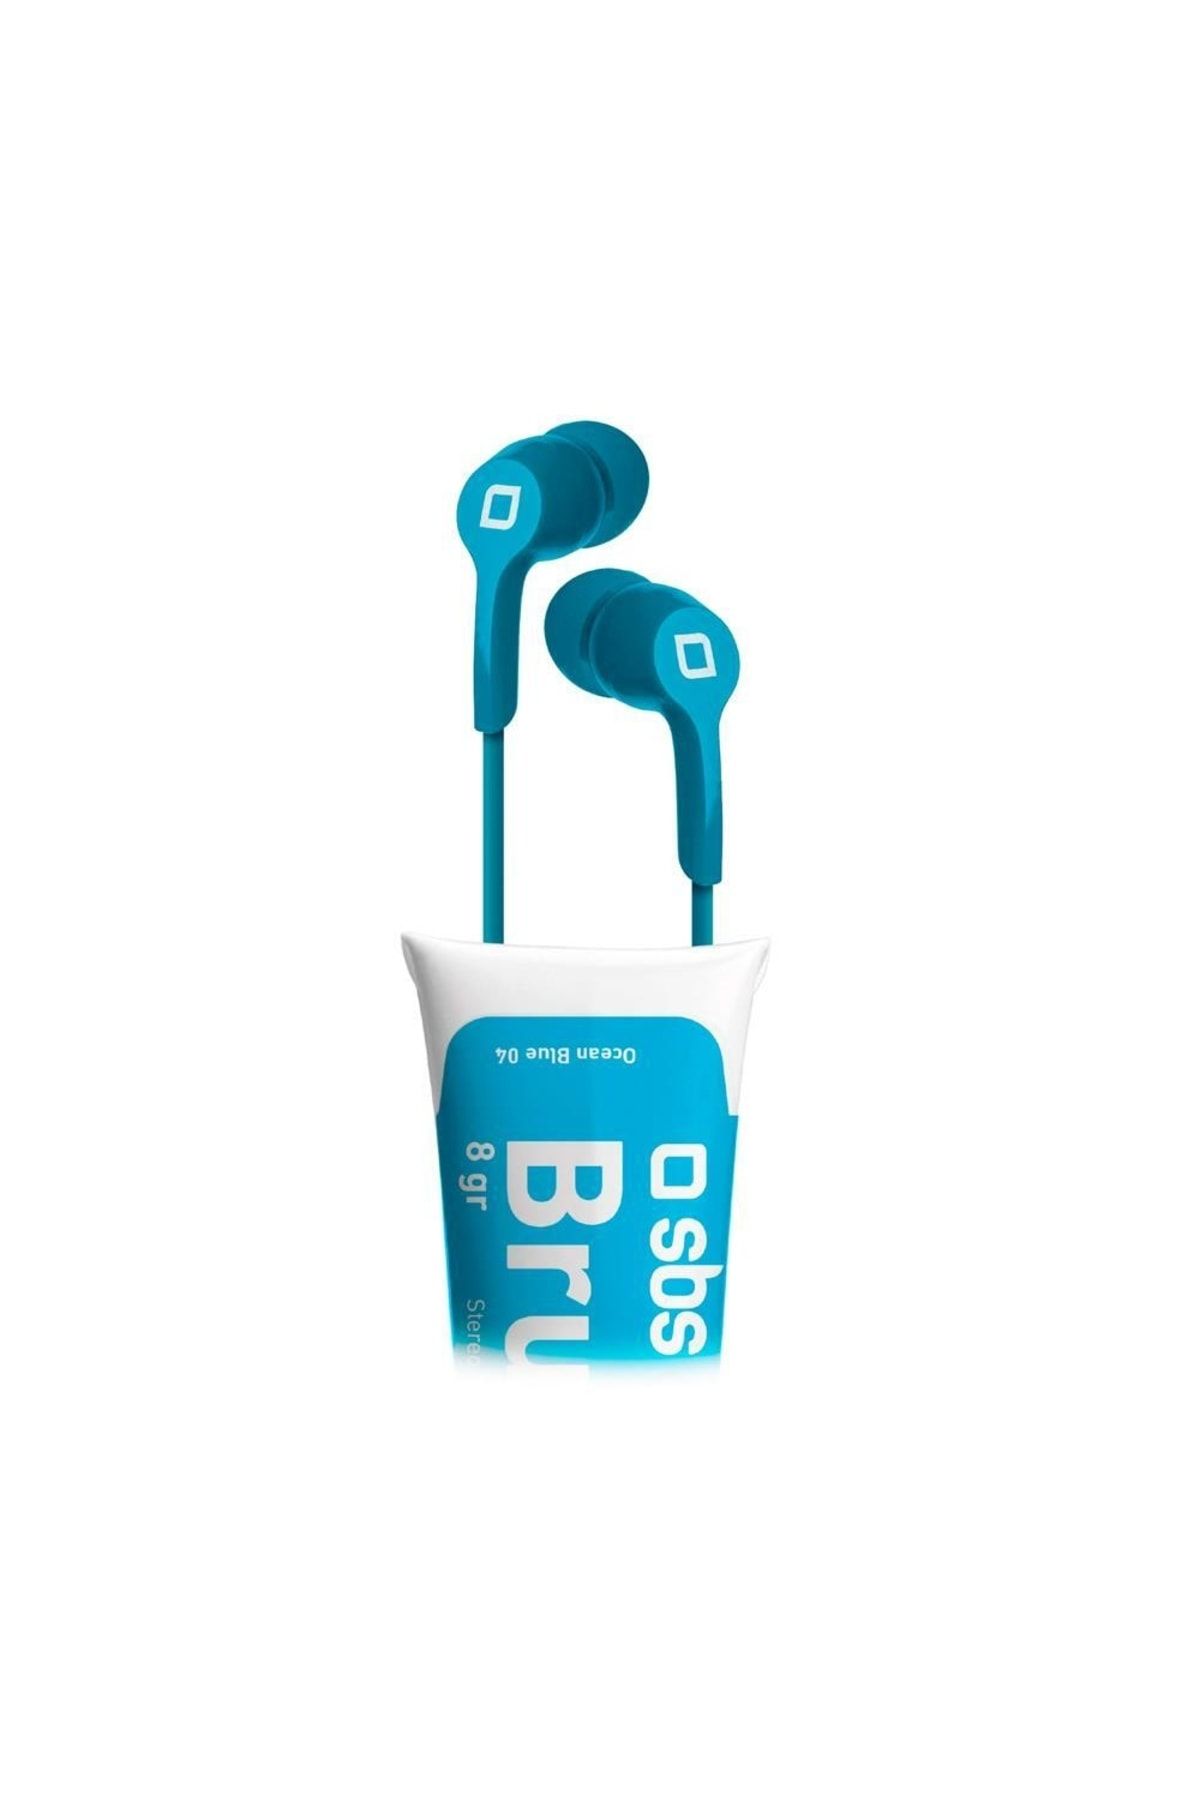 SBS 15537 Teearpaıntb Brush Mikrofonlu 3,5 Mm Jack'lı Mavi Mikrofonlu Kulaklık